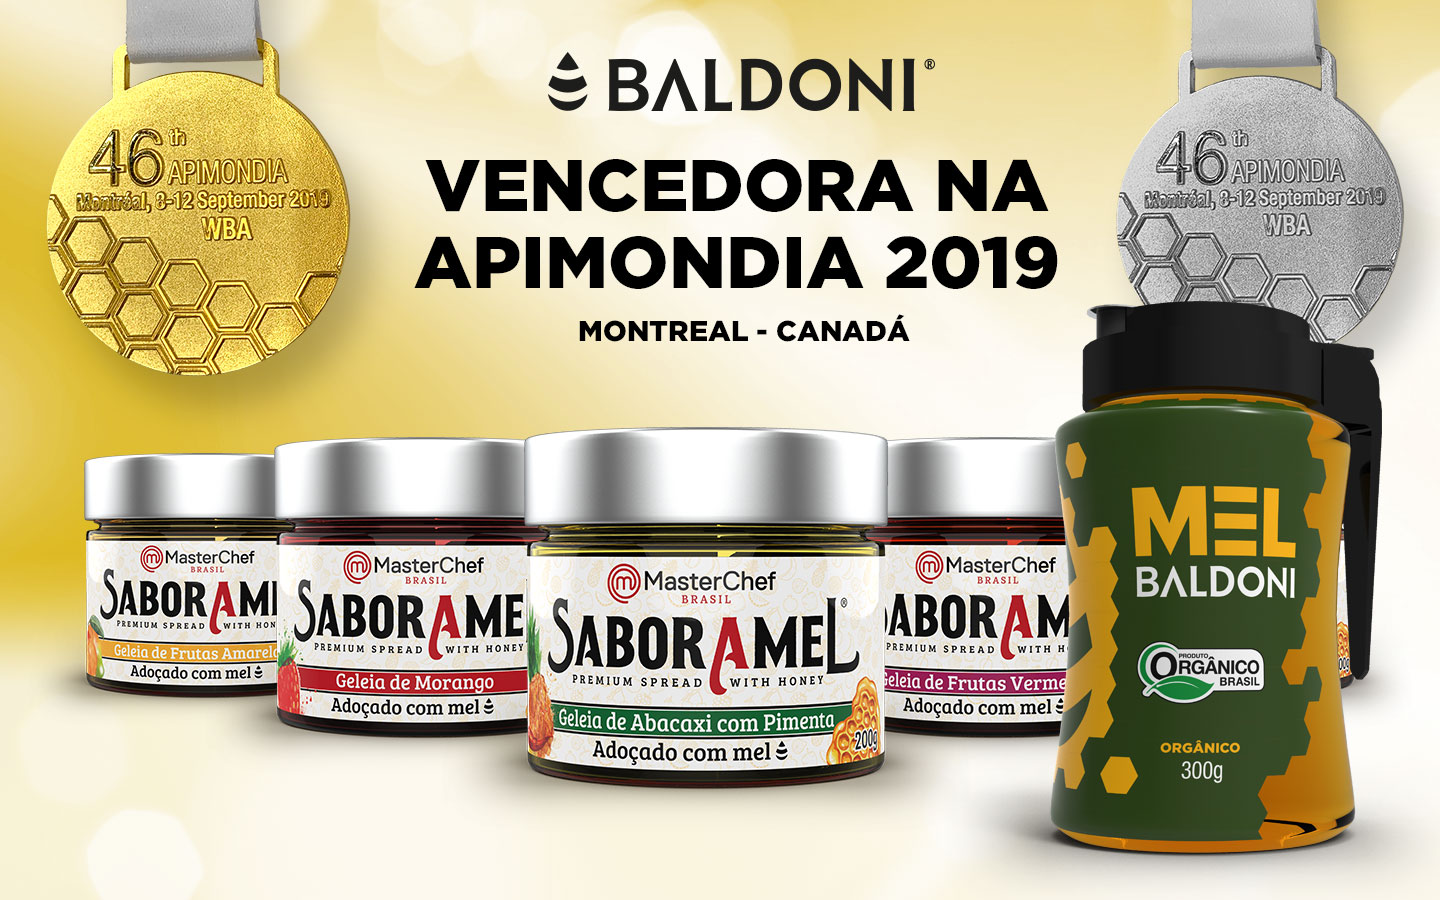 Baldoni Vencedora na Apimondia 2019